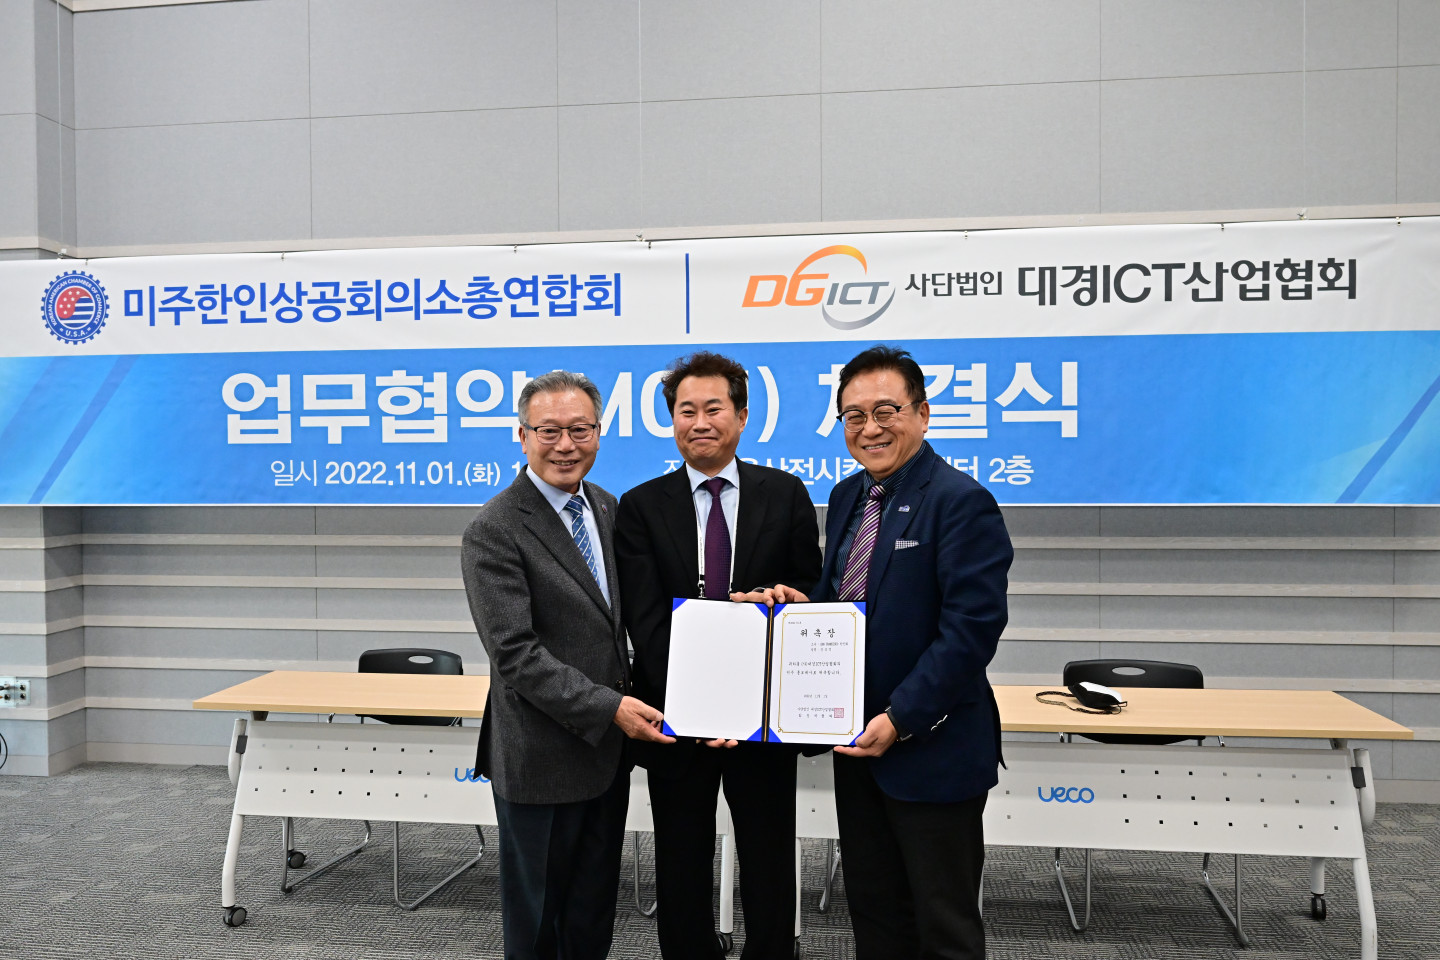 Церемония подписания меморандума о взаимопонимании между Корейско-американской торгово-промышленной палатой и Ассоциацией индустрии ИКТ Daekyung